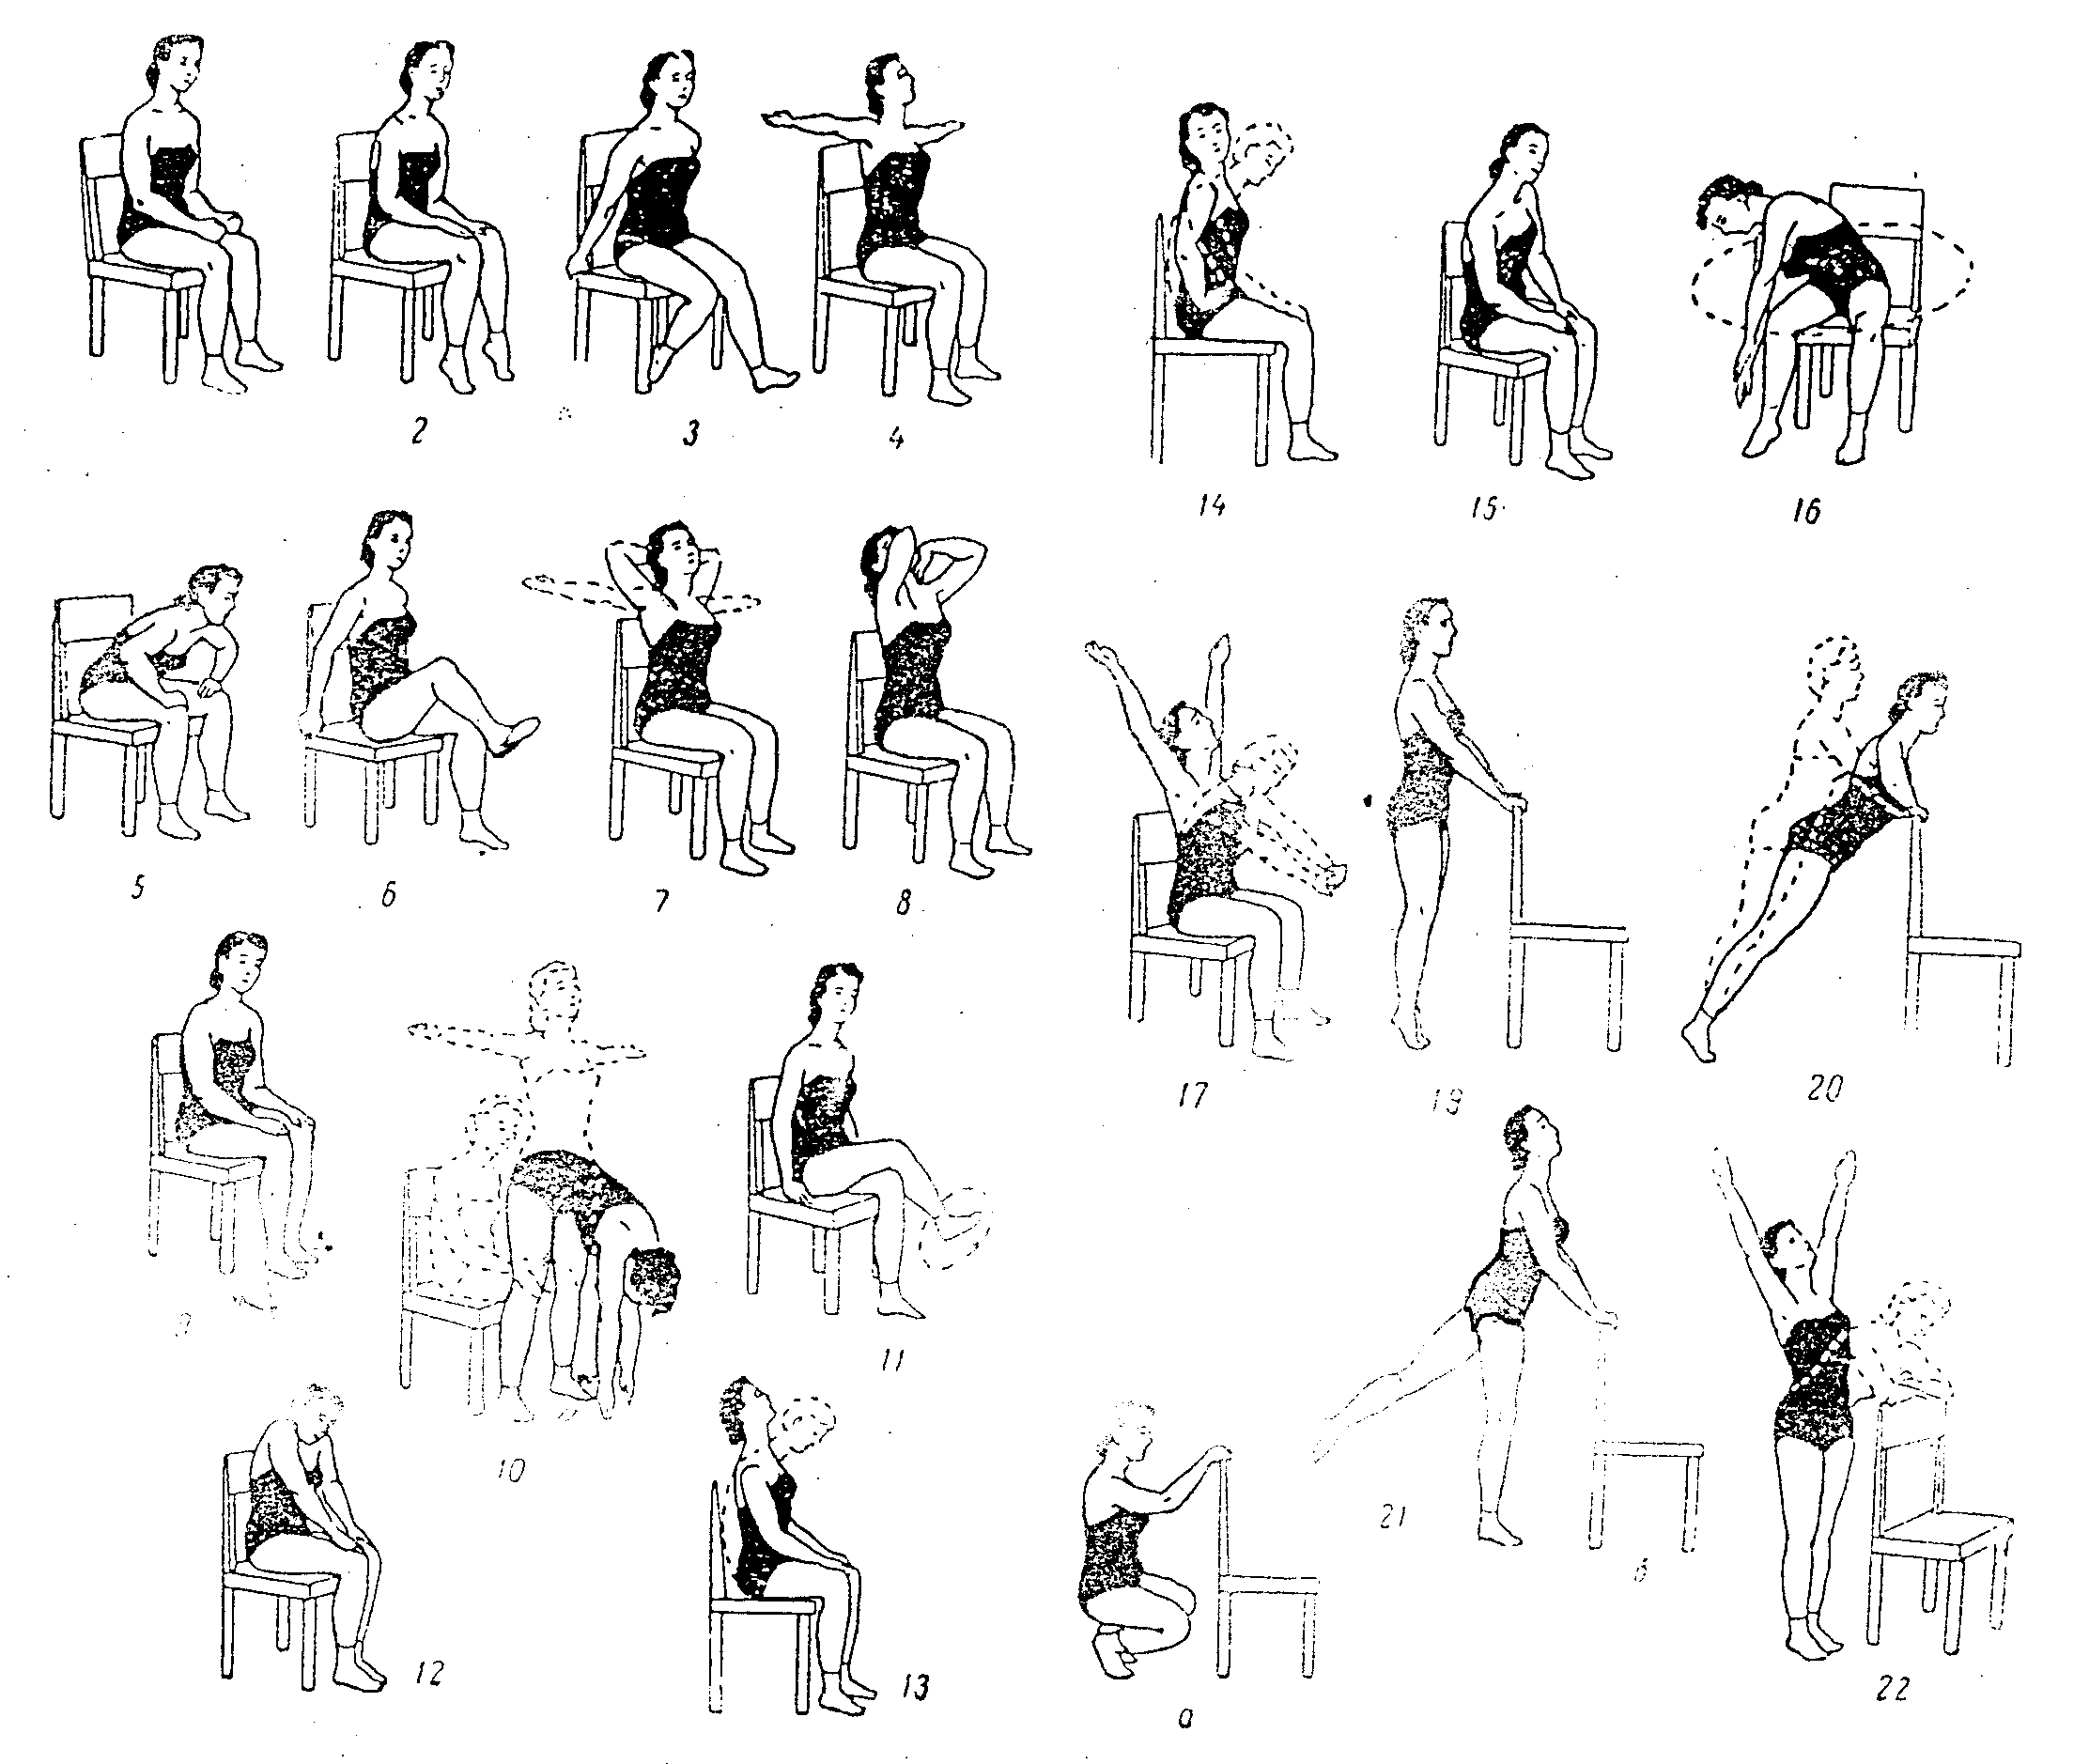 Упражнения со стулом - приводим тело в форму, находясь на рабочем месте